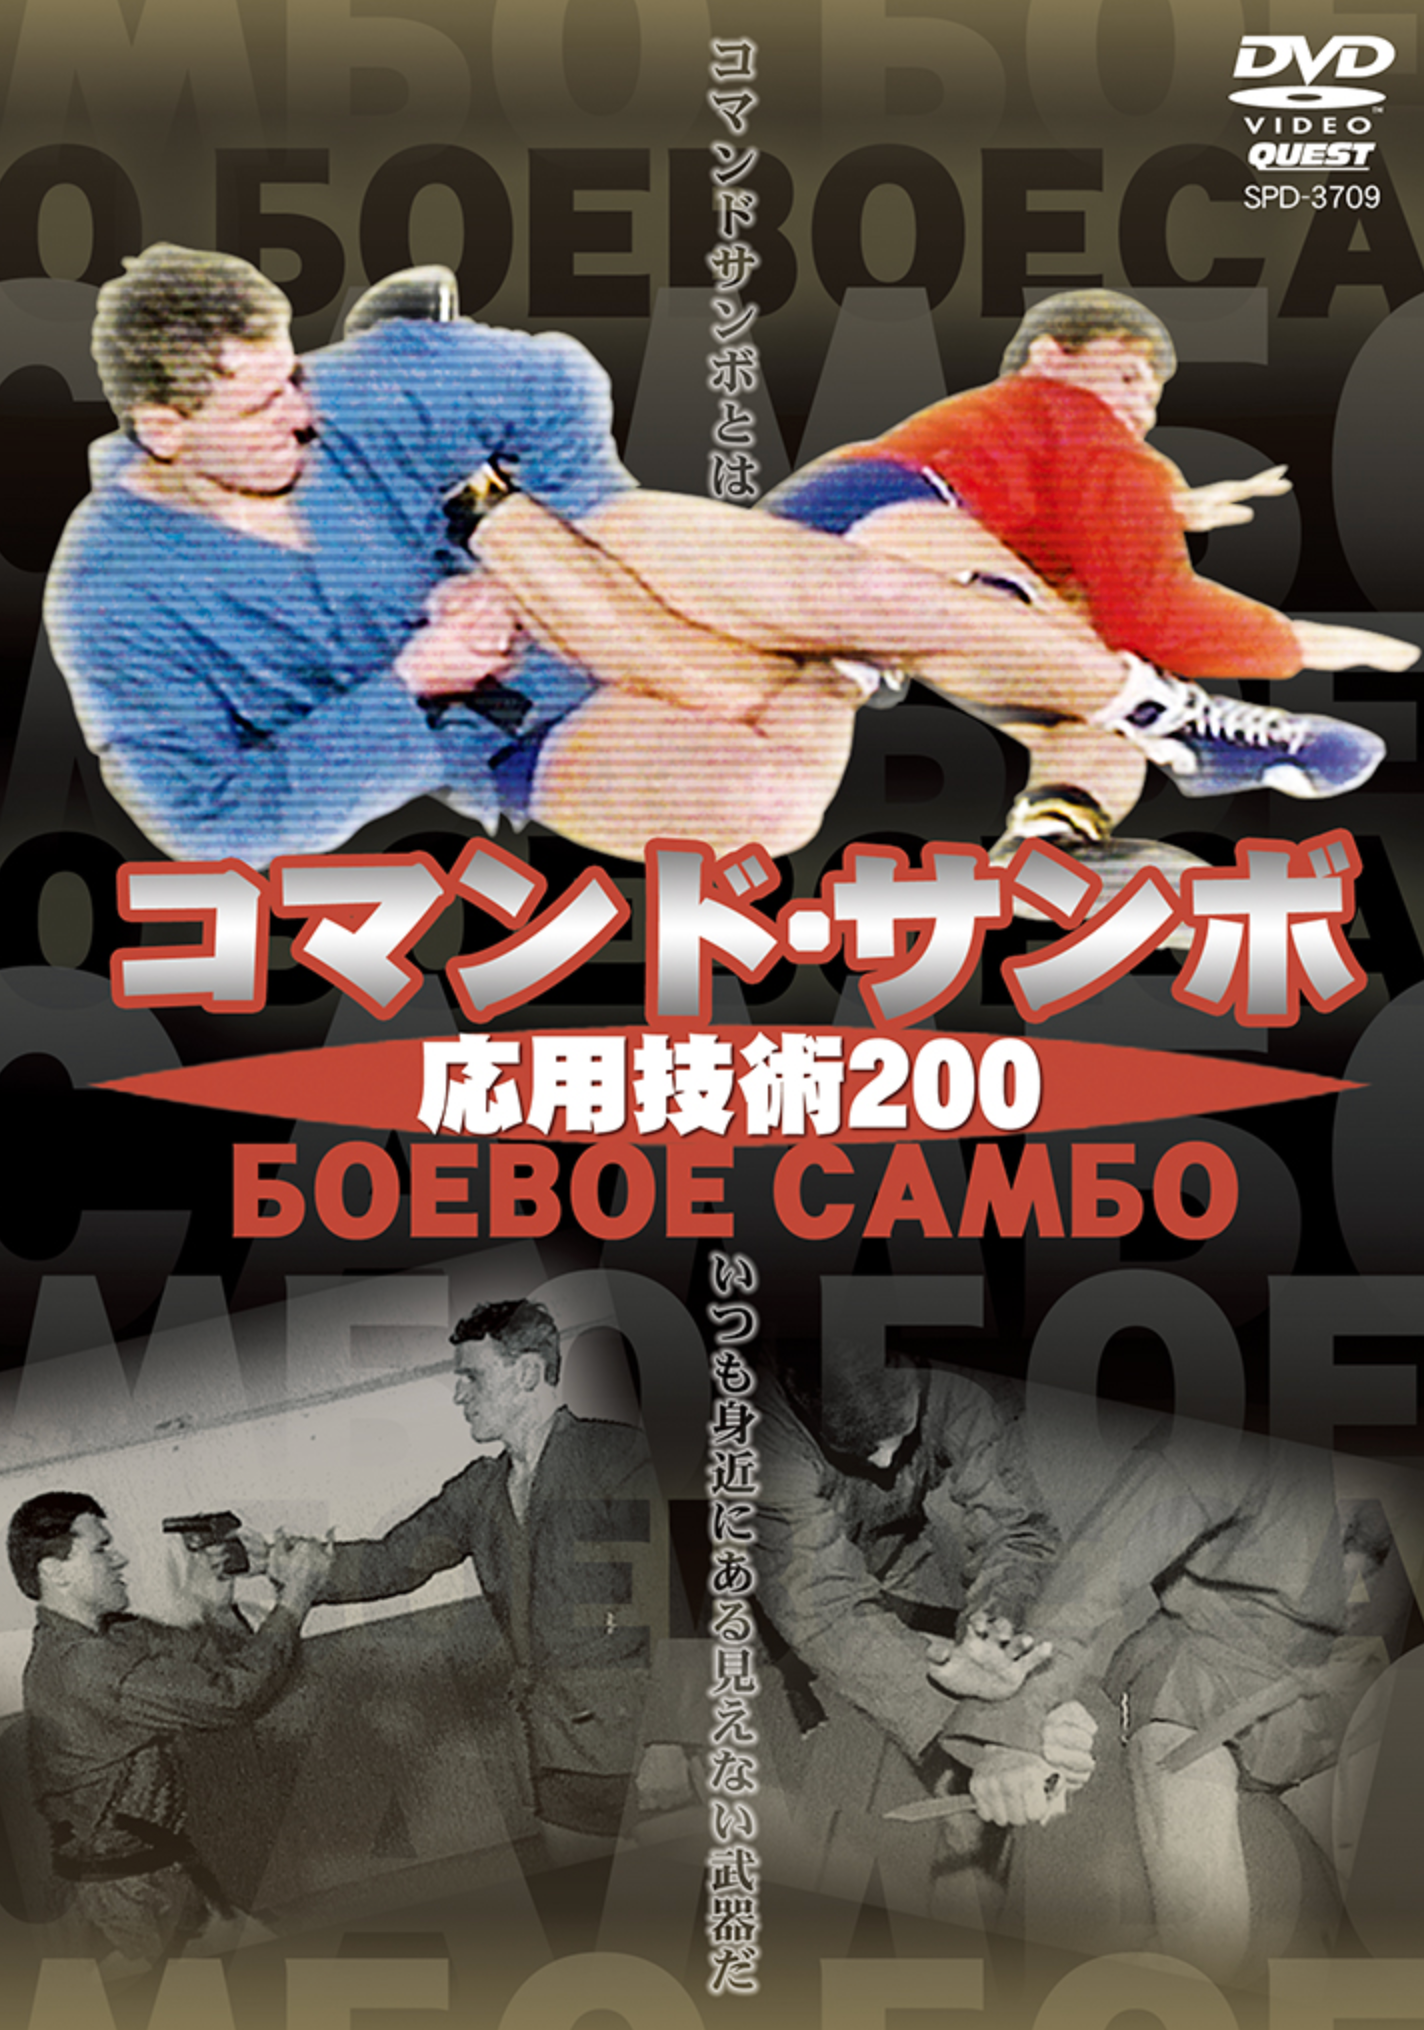 Commando Sambo Oyo Gijutsu 200 DVD - Budovideos Inc